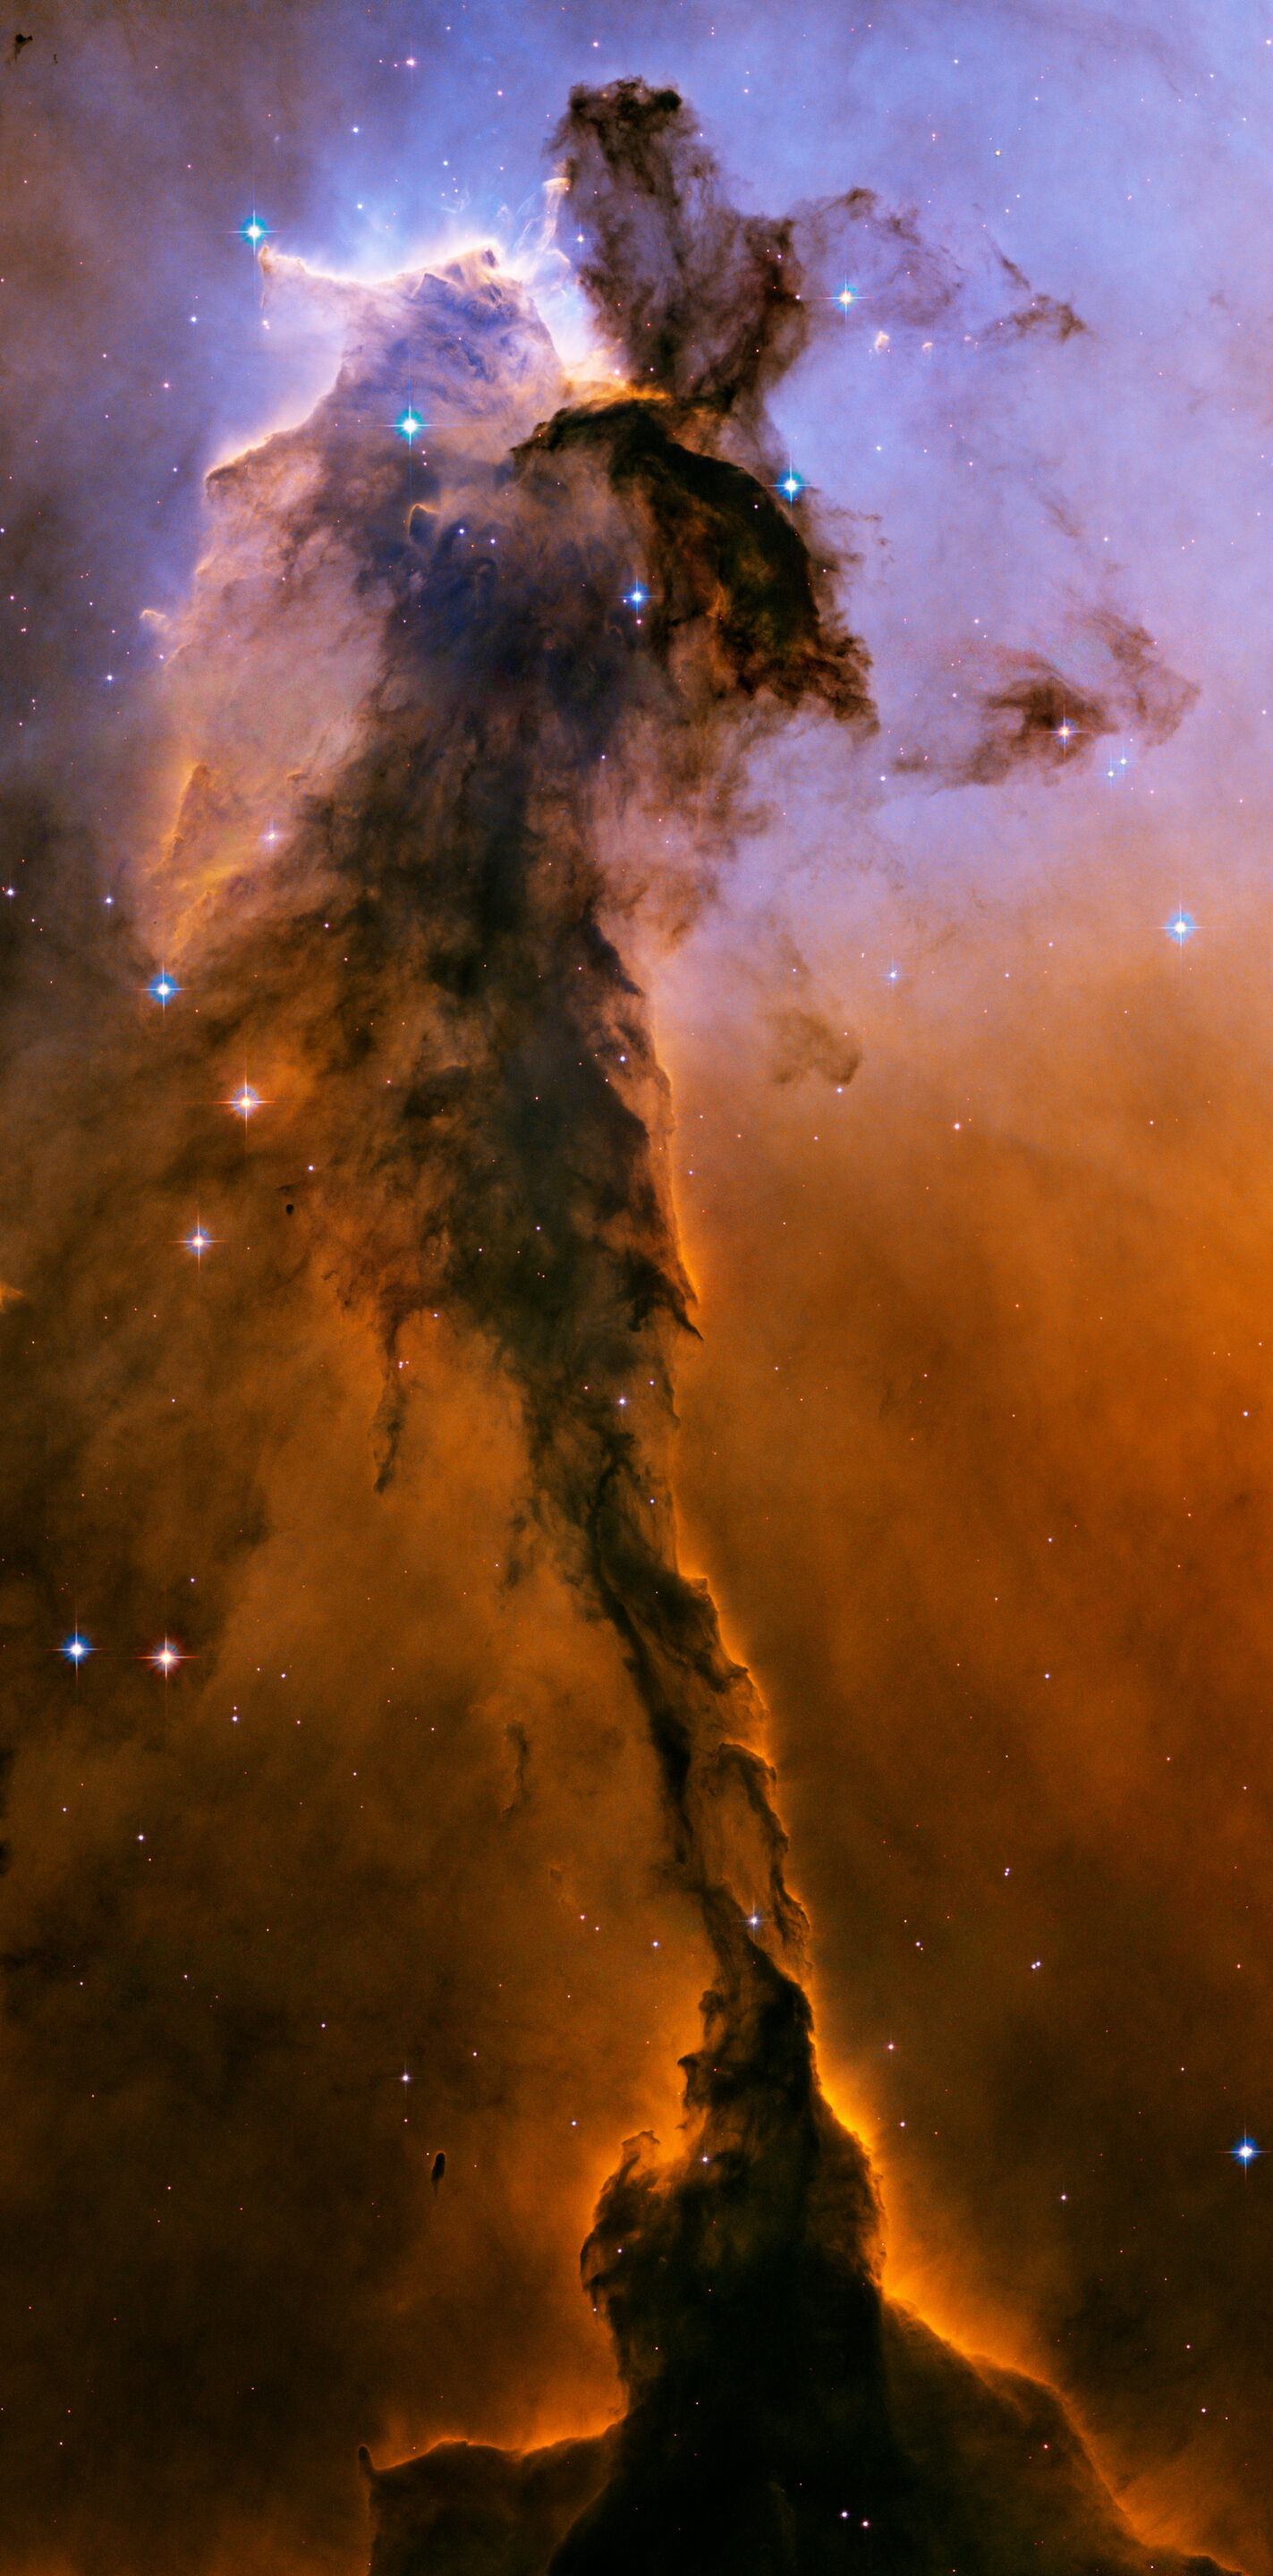 Star forming nebula eagle shaped.